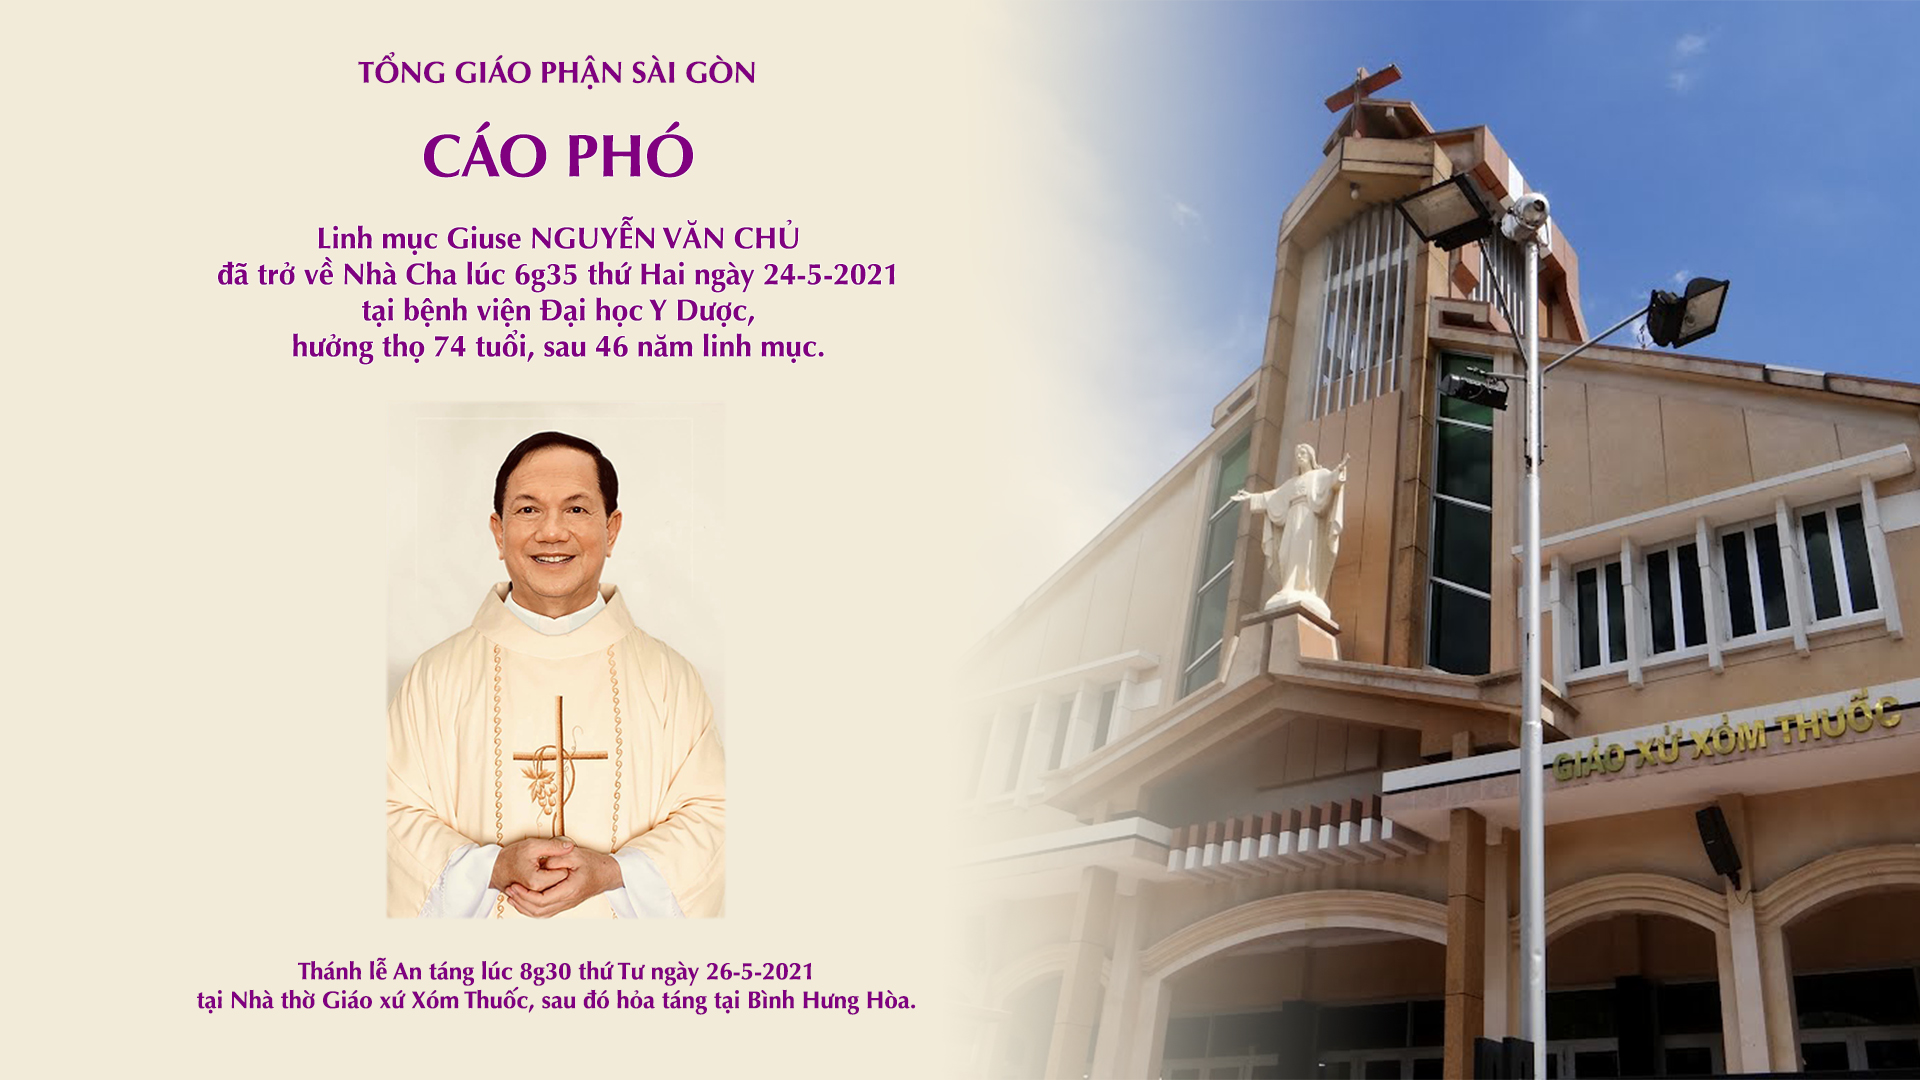 Cáo phó: Linh mục Giuse Nguyễn Văn Chủ trở về Nhà Cha ngày 24-5-2021; Lễ An táng lúc 8g30 thứ Tư 26-5-2021